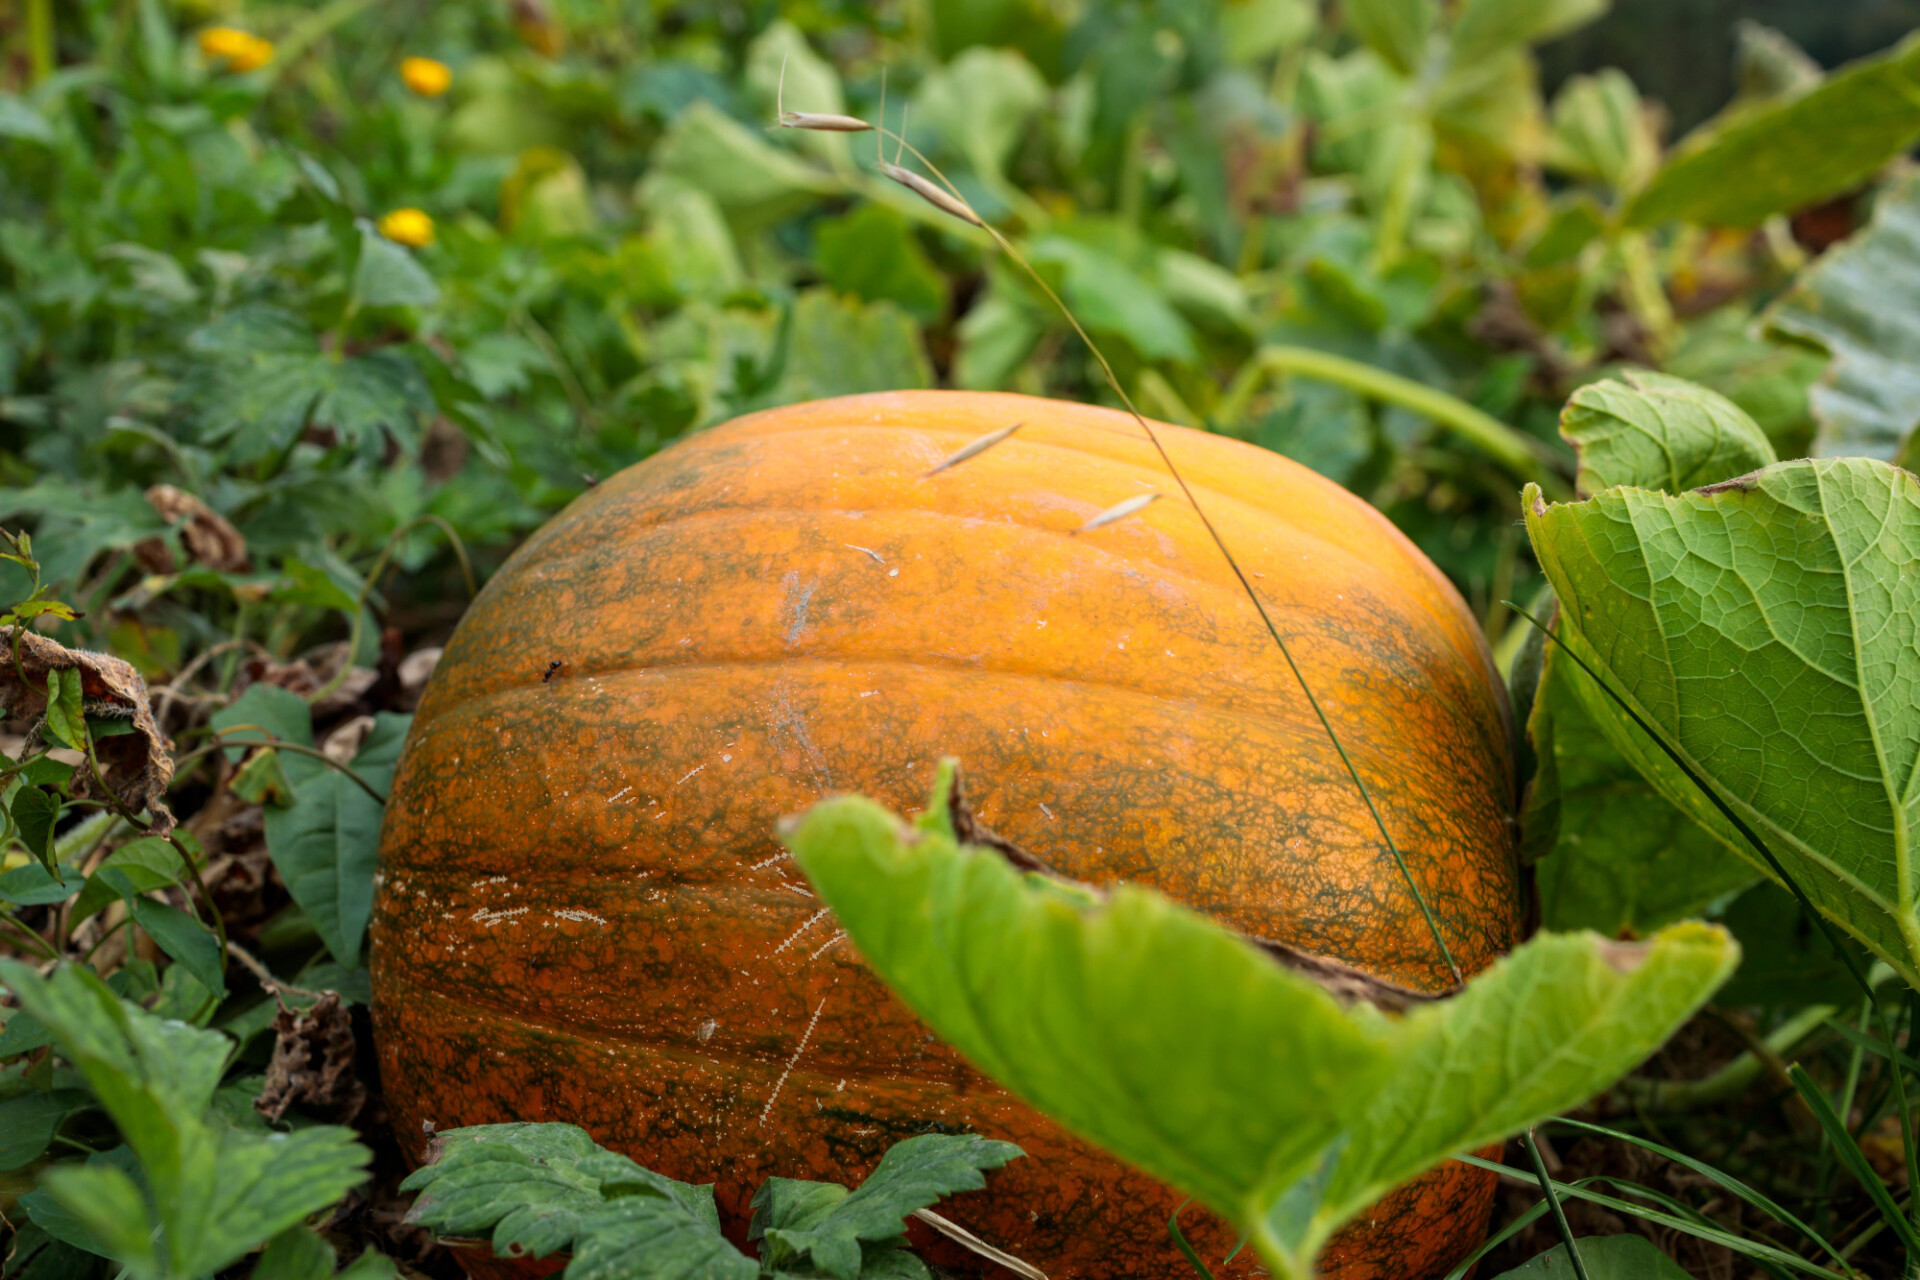 Pumpkin in the field